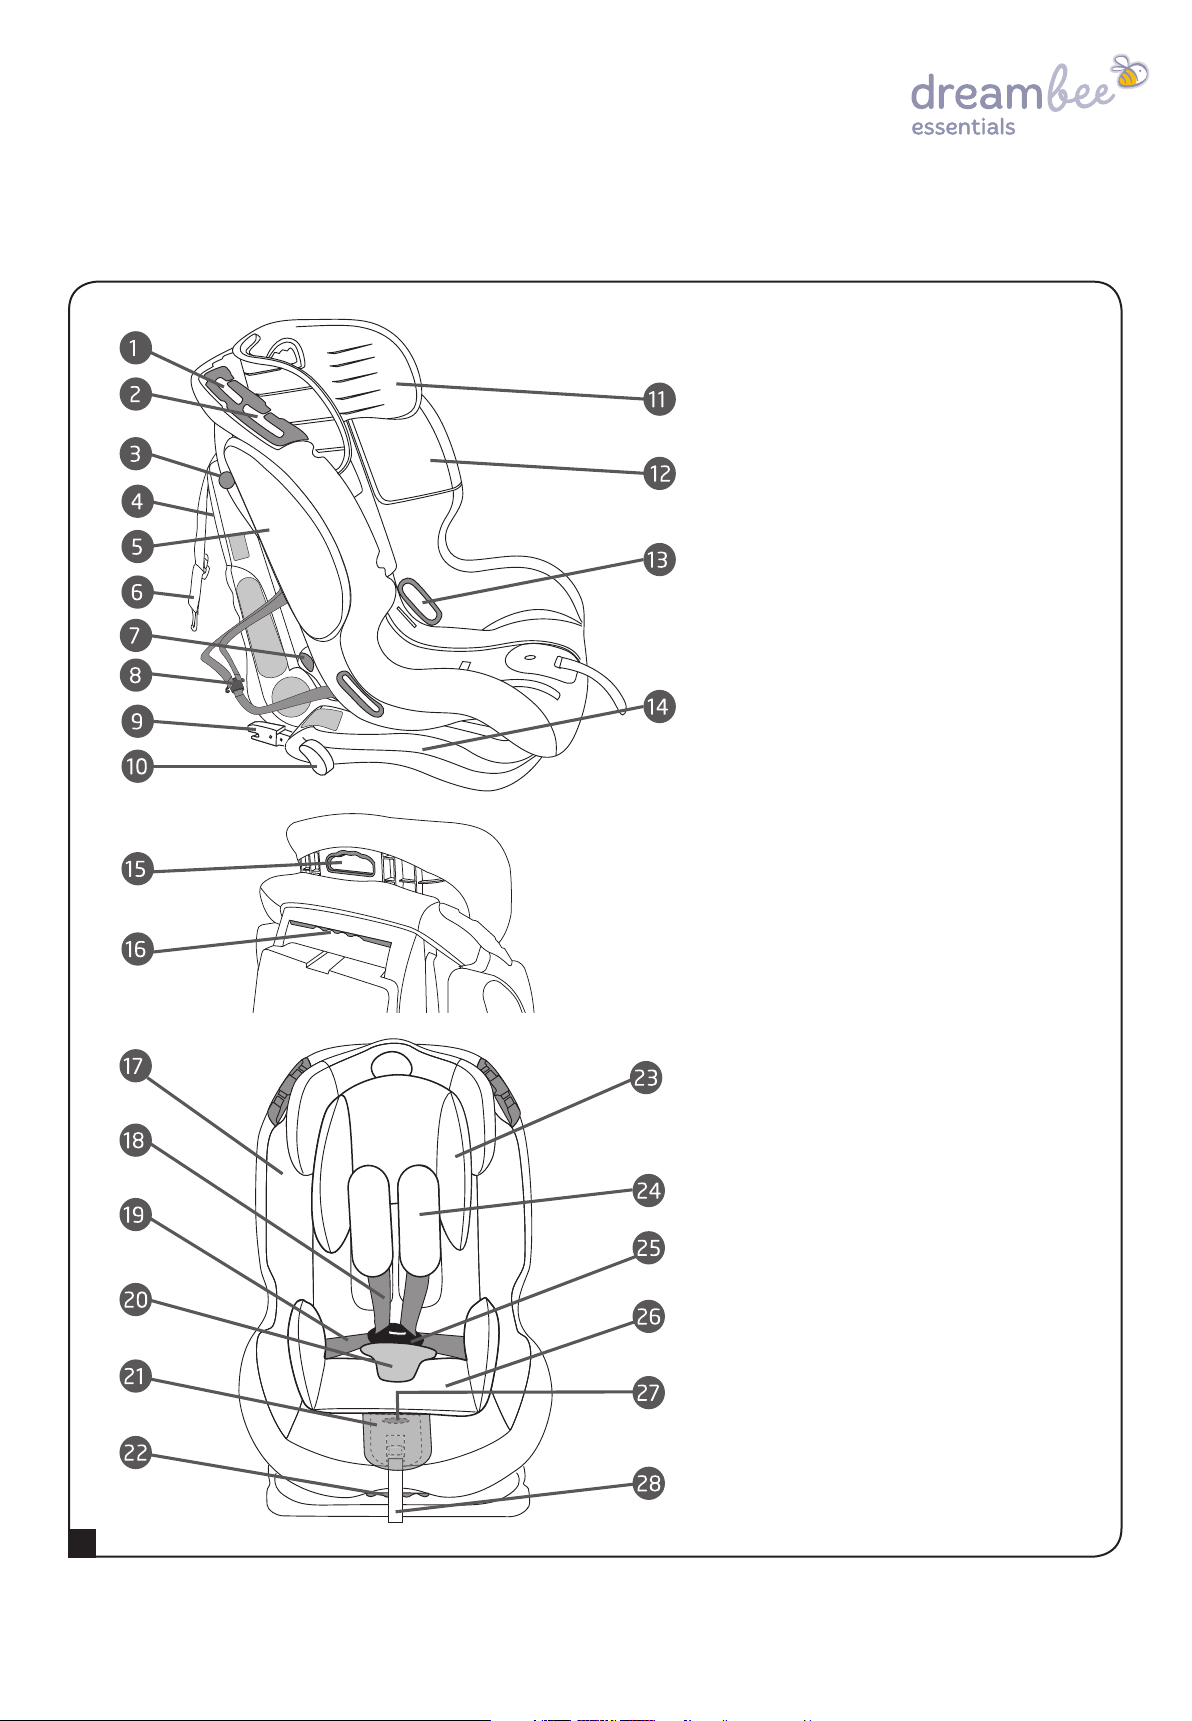 meubilair Intimidatie Regenboog Handleiding Dreambee Essentials Isofix 1-2-3 (pagina 6 van 16) (Nederlands)